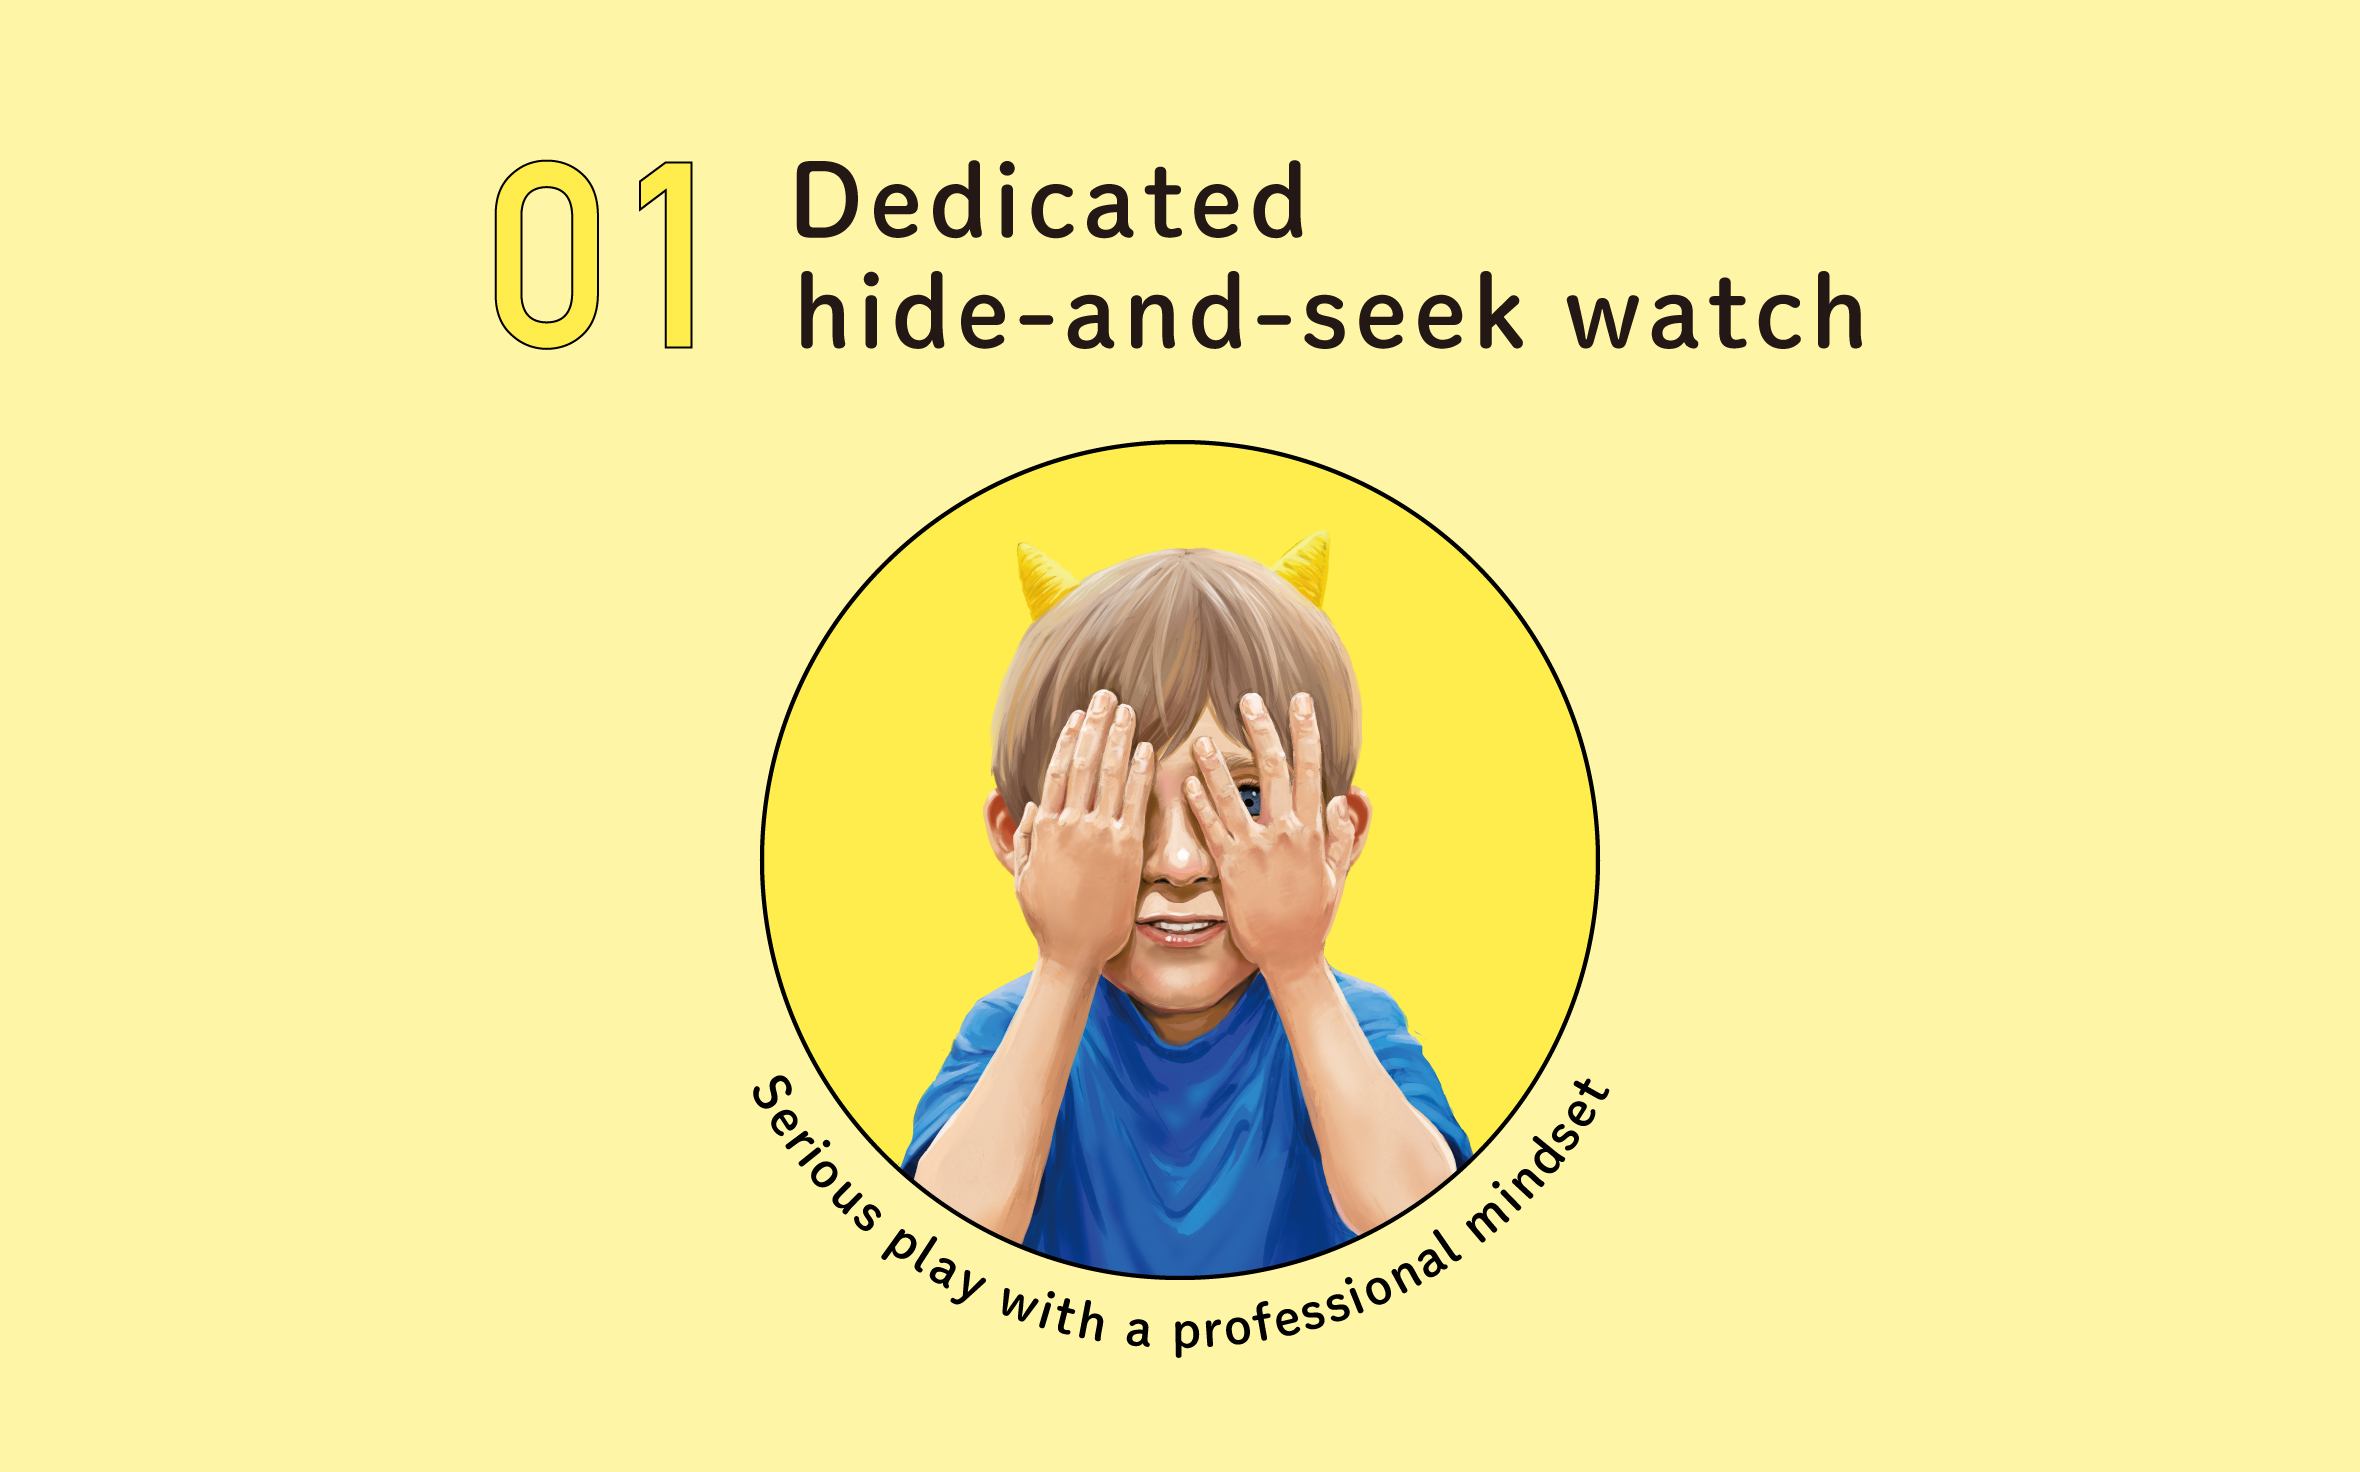 Dedicated hide-and-seek watch